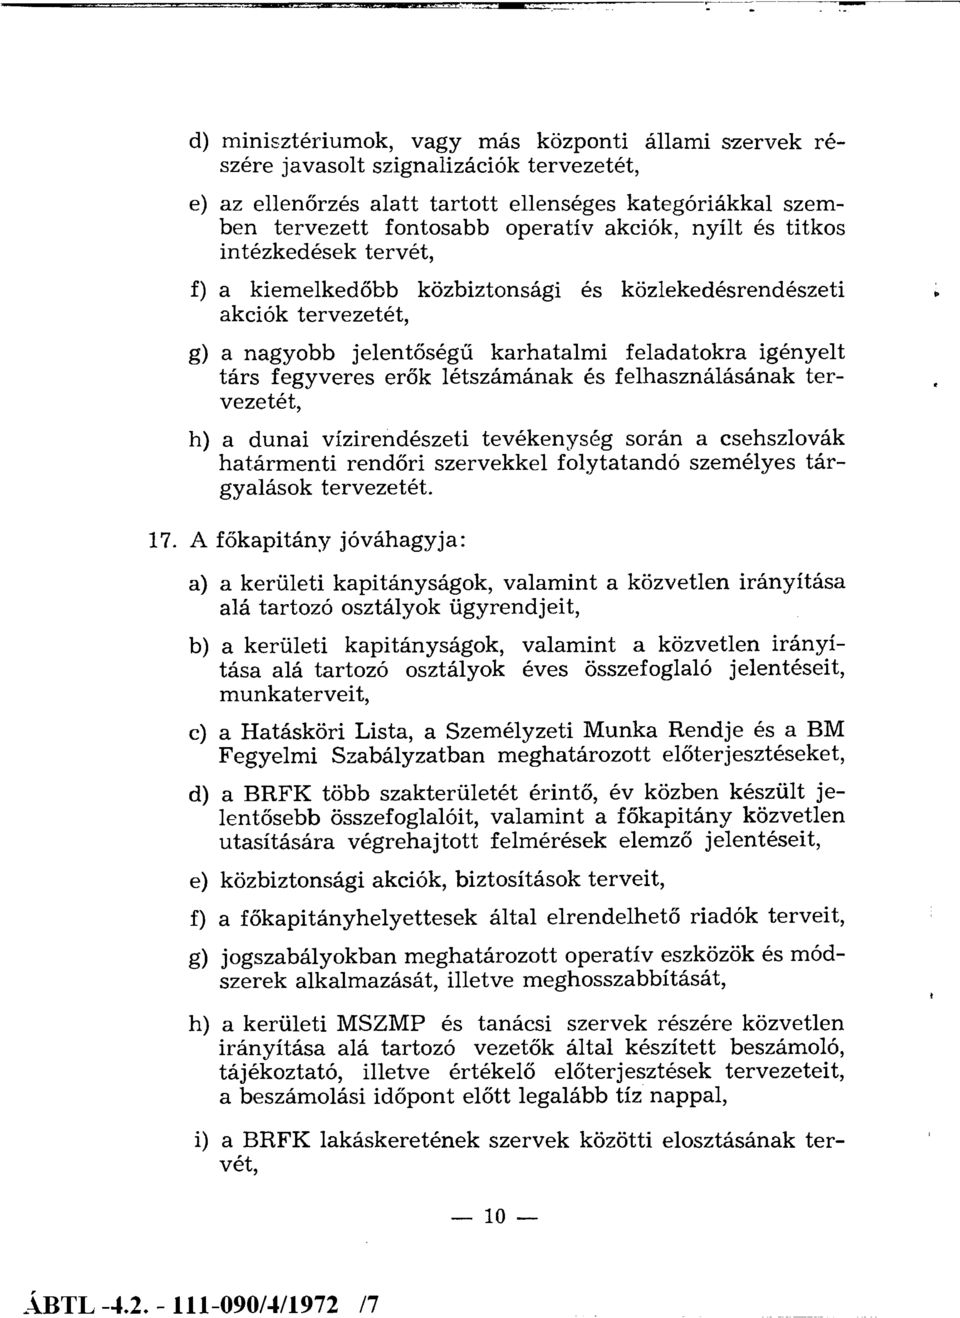 létszámának és felhasználásának tervezetét, h) a dunai vízirendészeti tevékenység során a csehszlovák határm enti rendőri szervekkel folytatandó személyes tárgyalások tervezetét. 17.